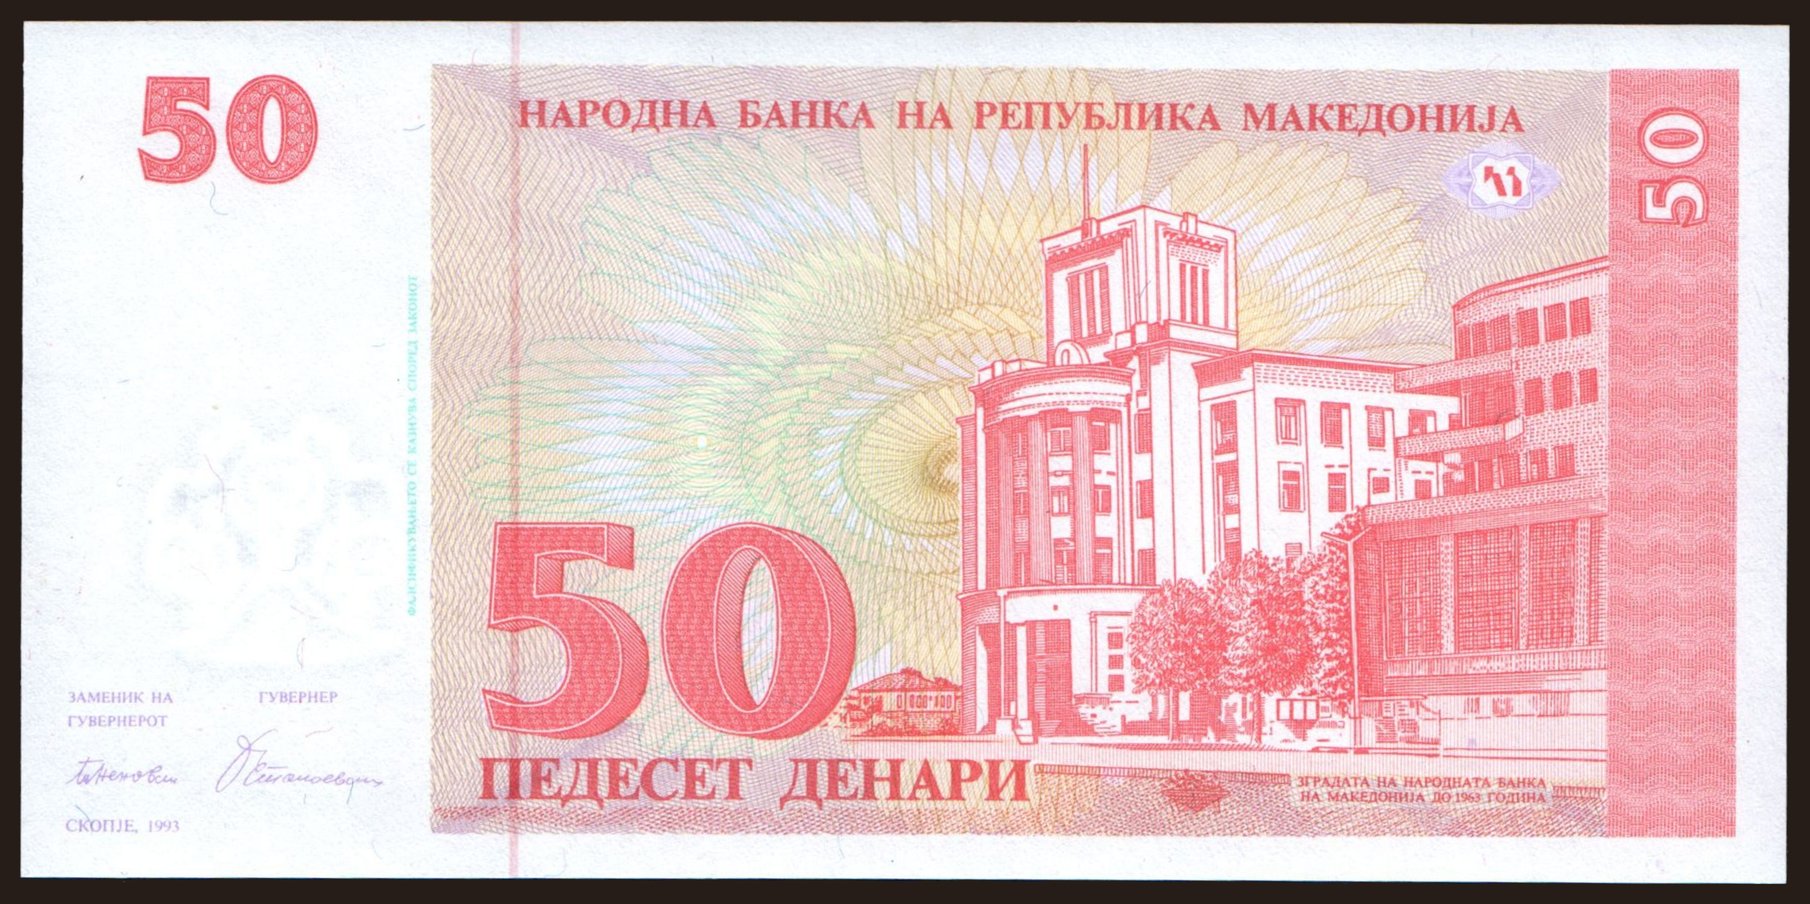 50 denari, 1993